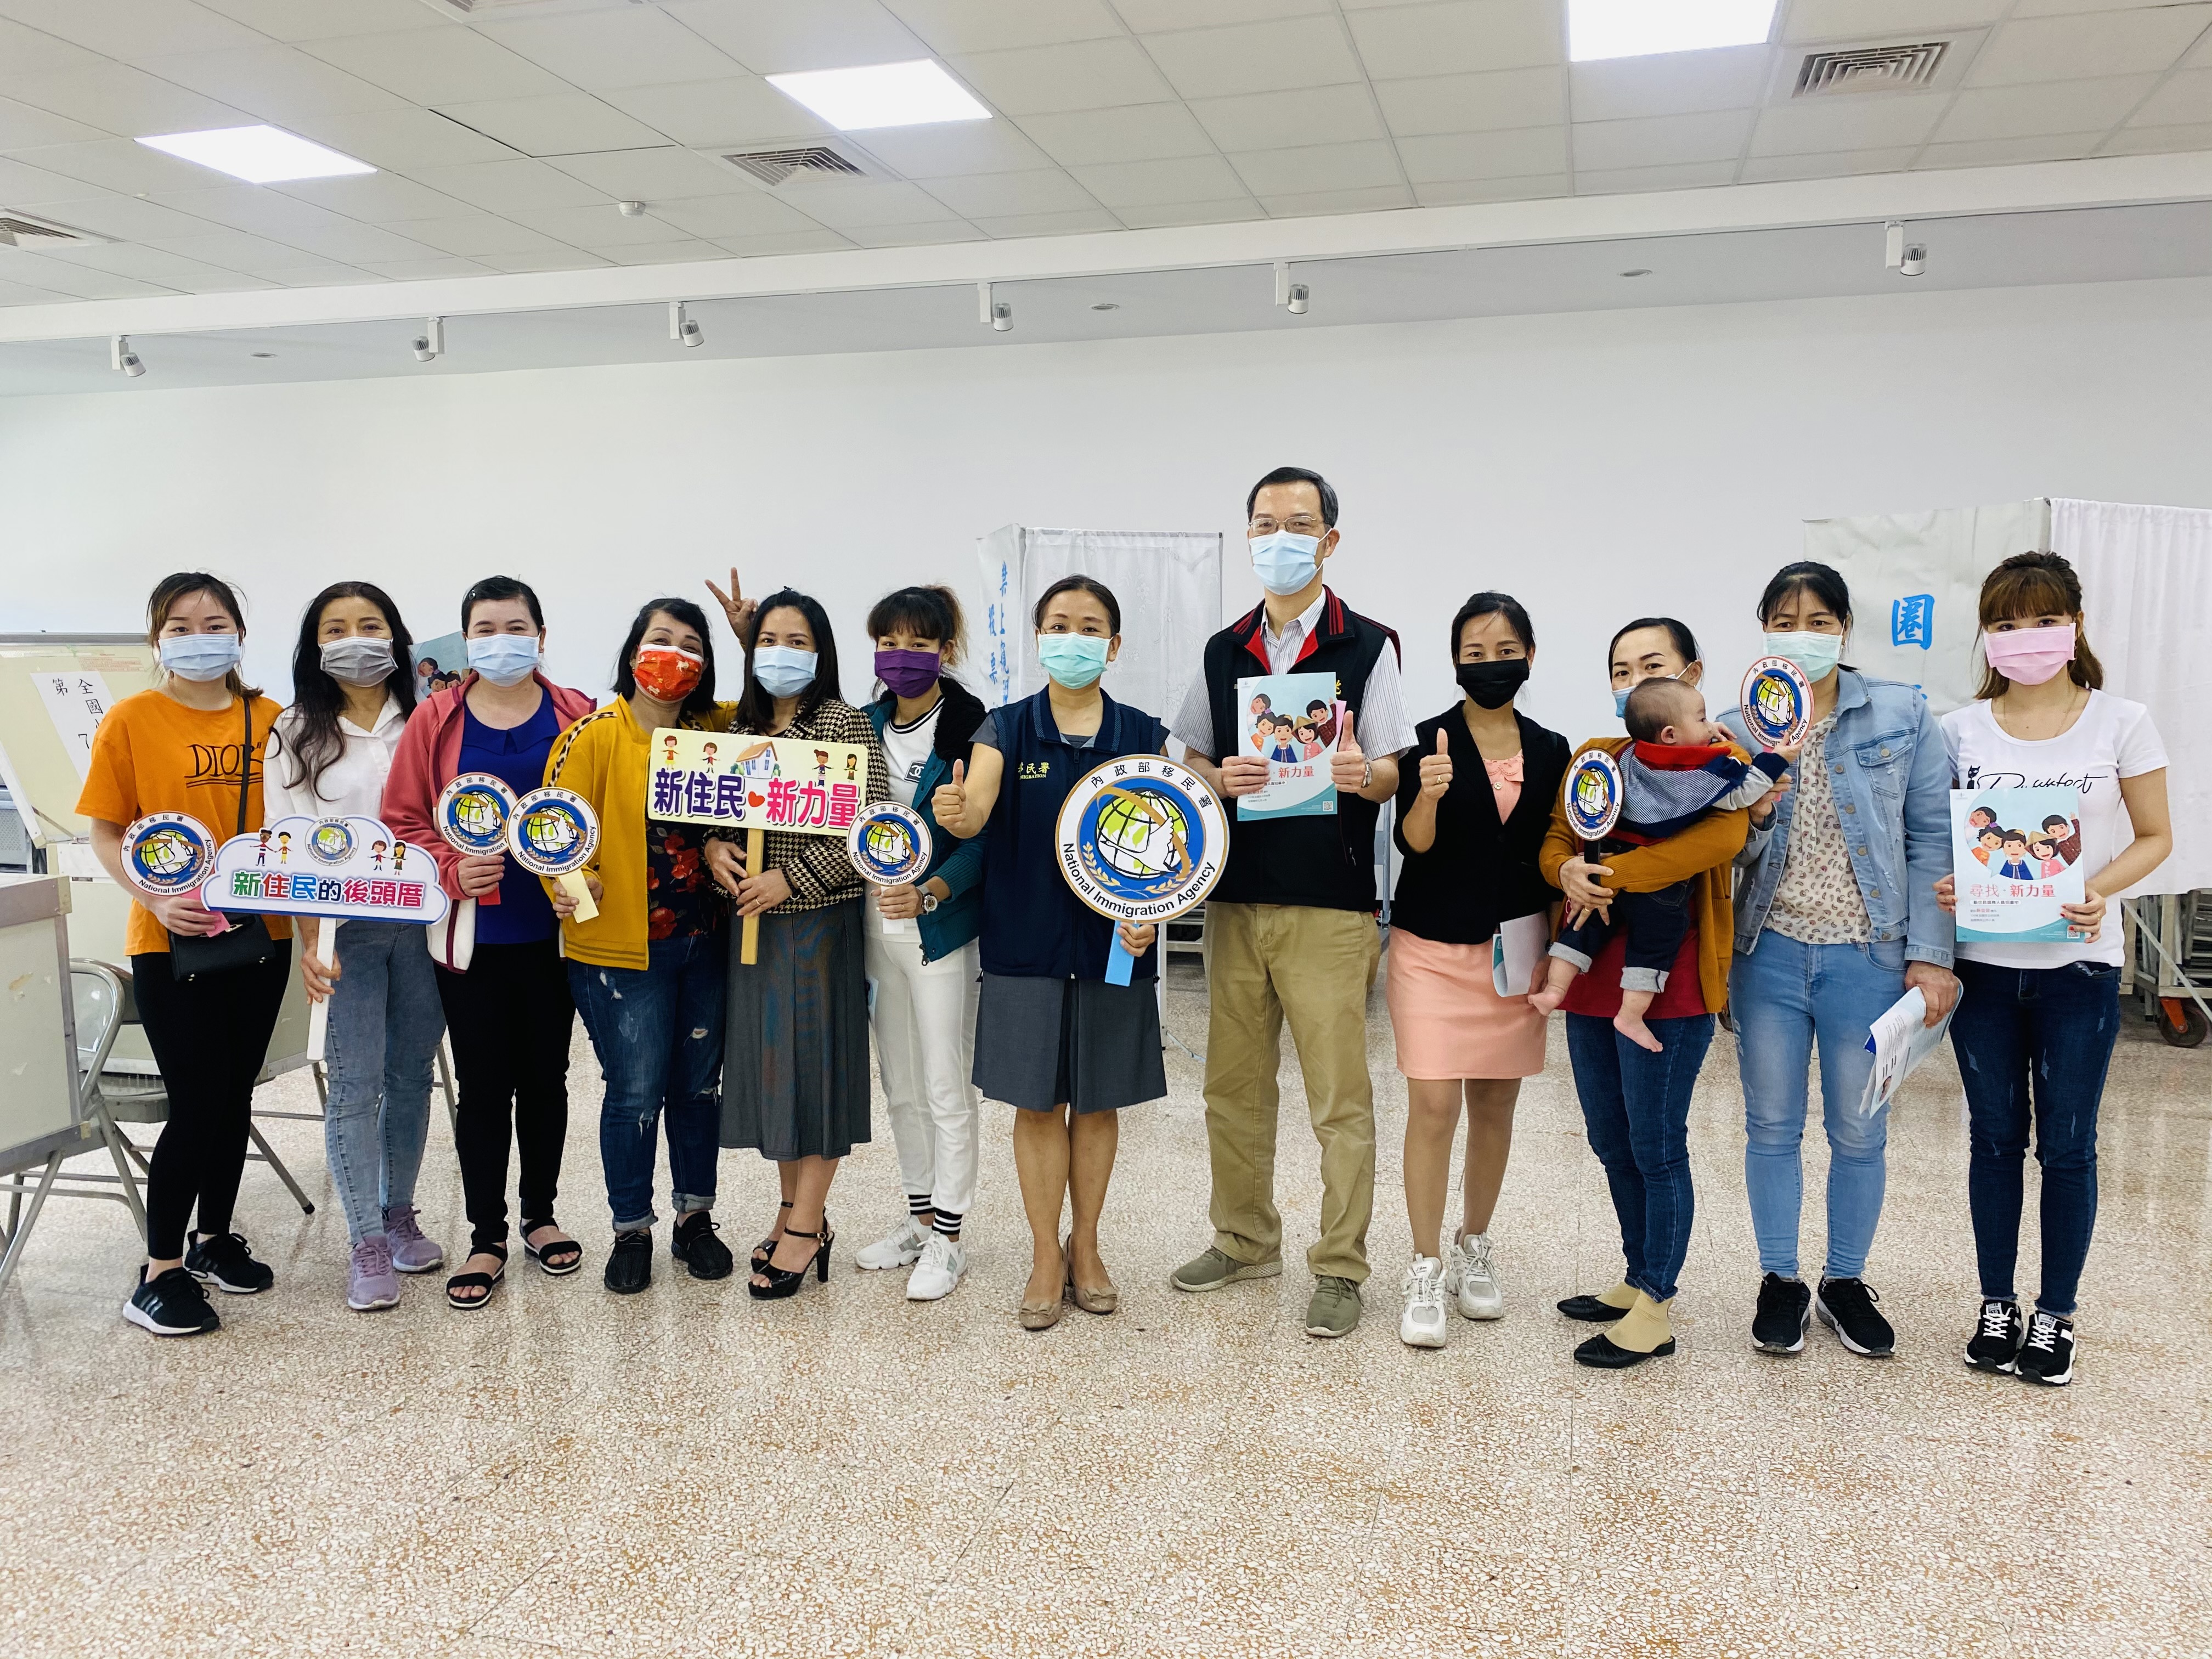 Situs web Kantor Pusat Layanan Kota Taoyuan Penduduk Baru Referendum Simulasi Pengajaran Menyediakan Pengumuman Pemilihan dalam Berbagai Bahasa. Sumber : Kantor Pusat Layanan Kota Taoyuan